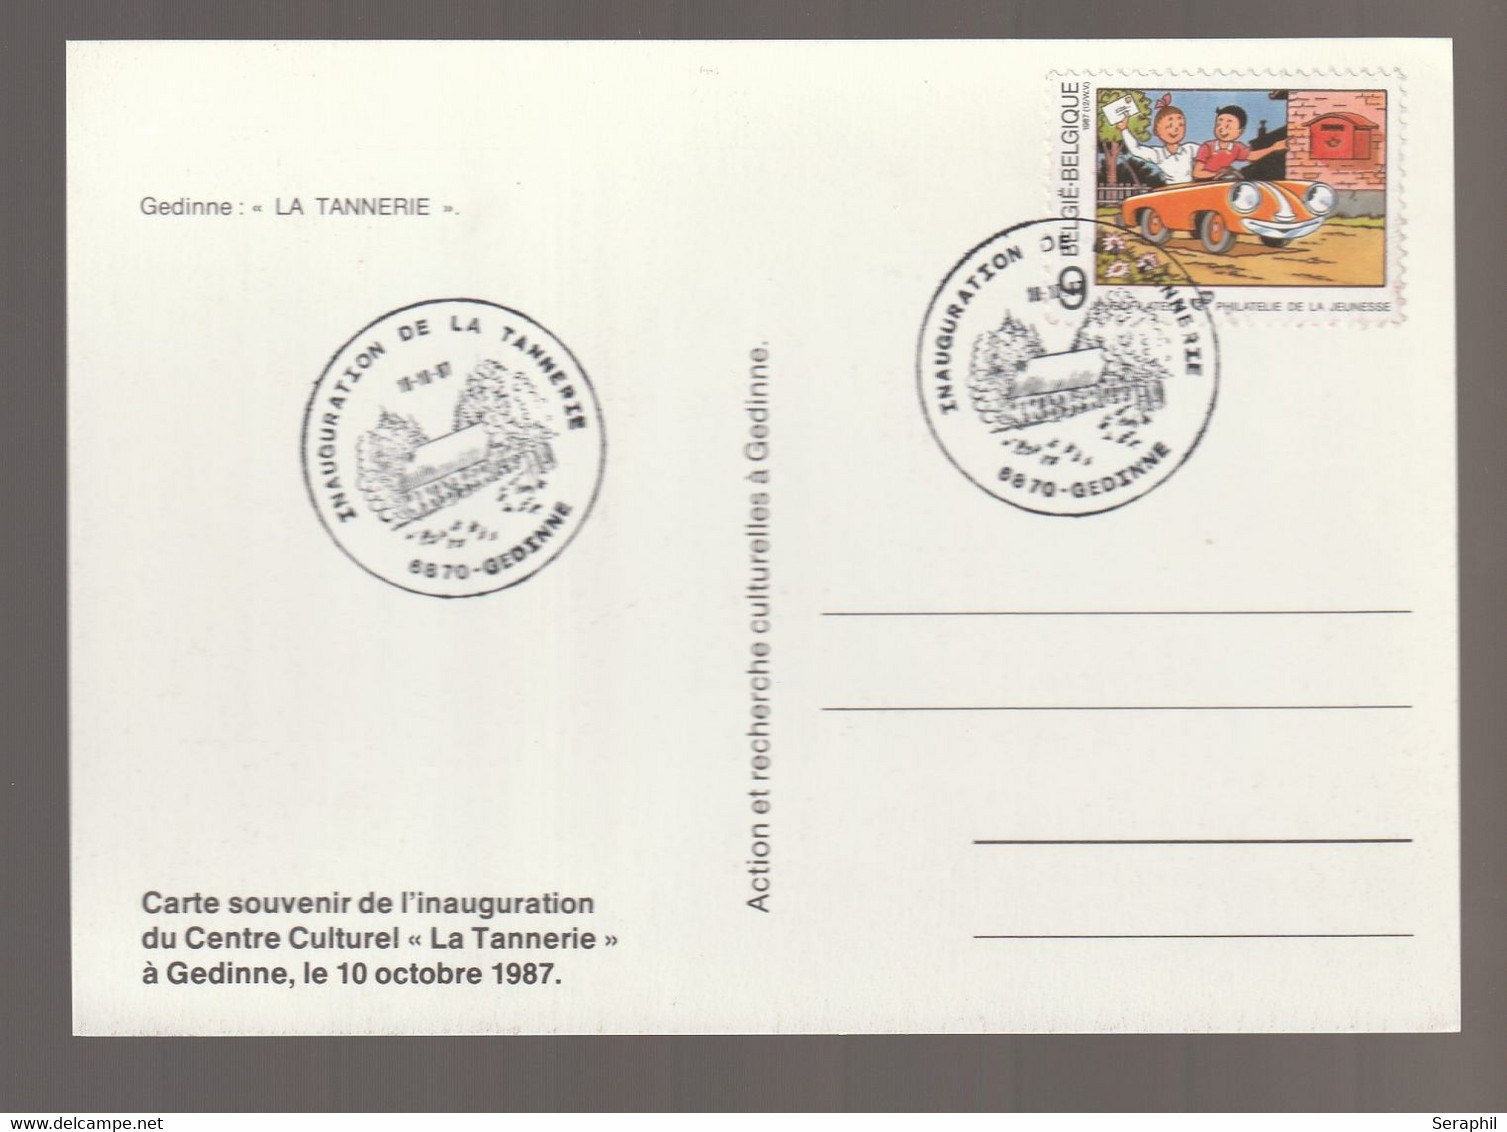 Bob & Bobette - Timbre N° 2264 - Gedinne - La Tannerie - Carte Souvenir De L'Inauguration Du Centre Culturel - Philabédés (fumetti)